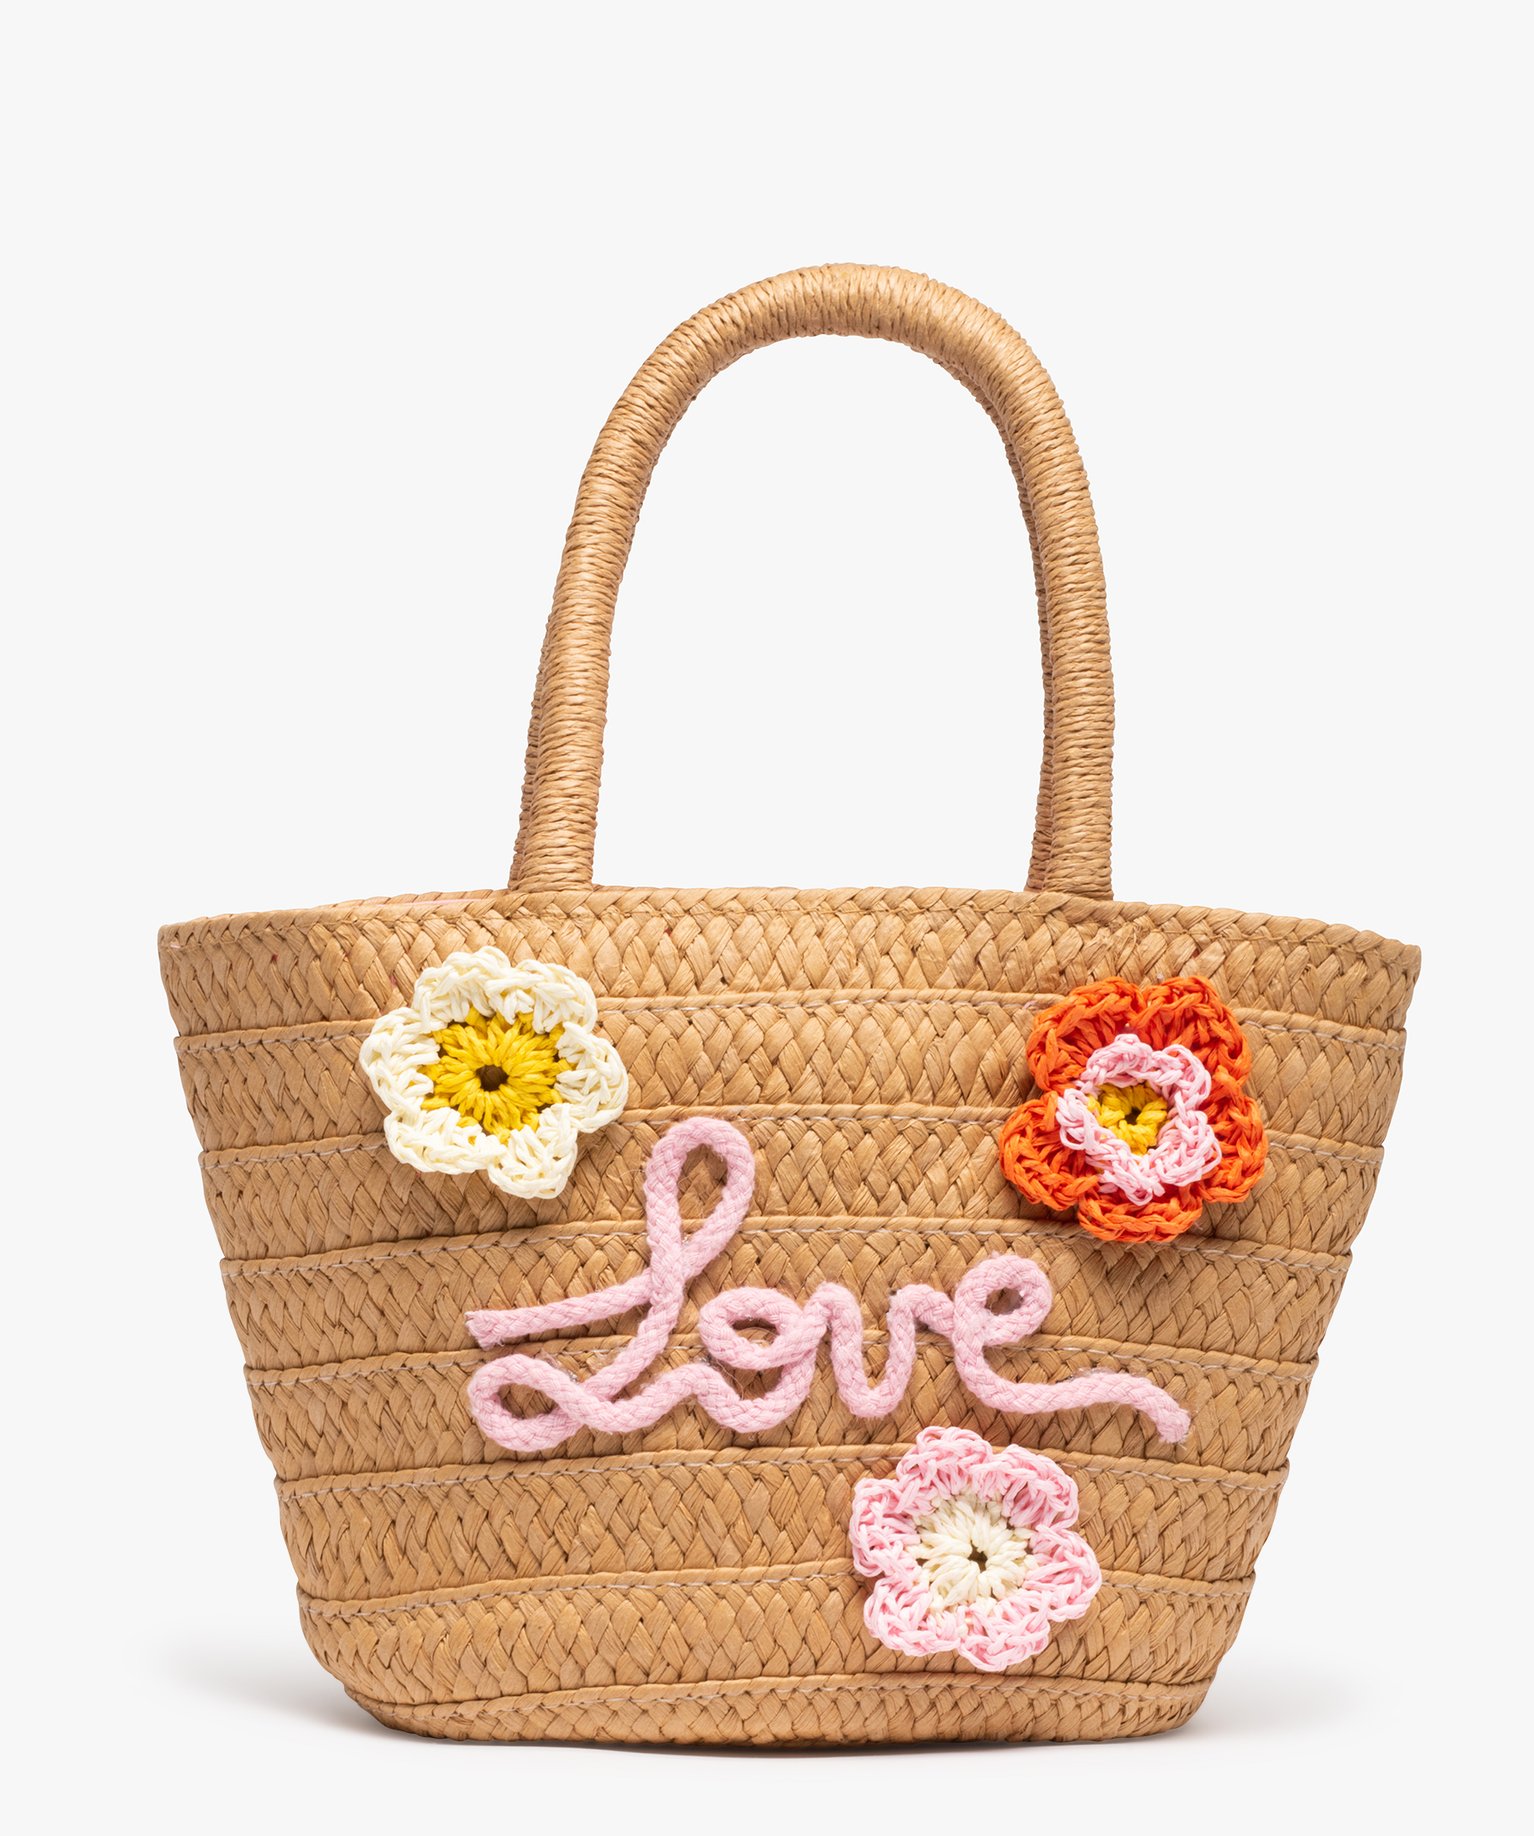 sac en paille fille forme cabas a fleurs multicolores beige